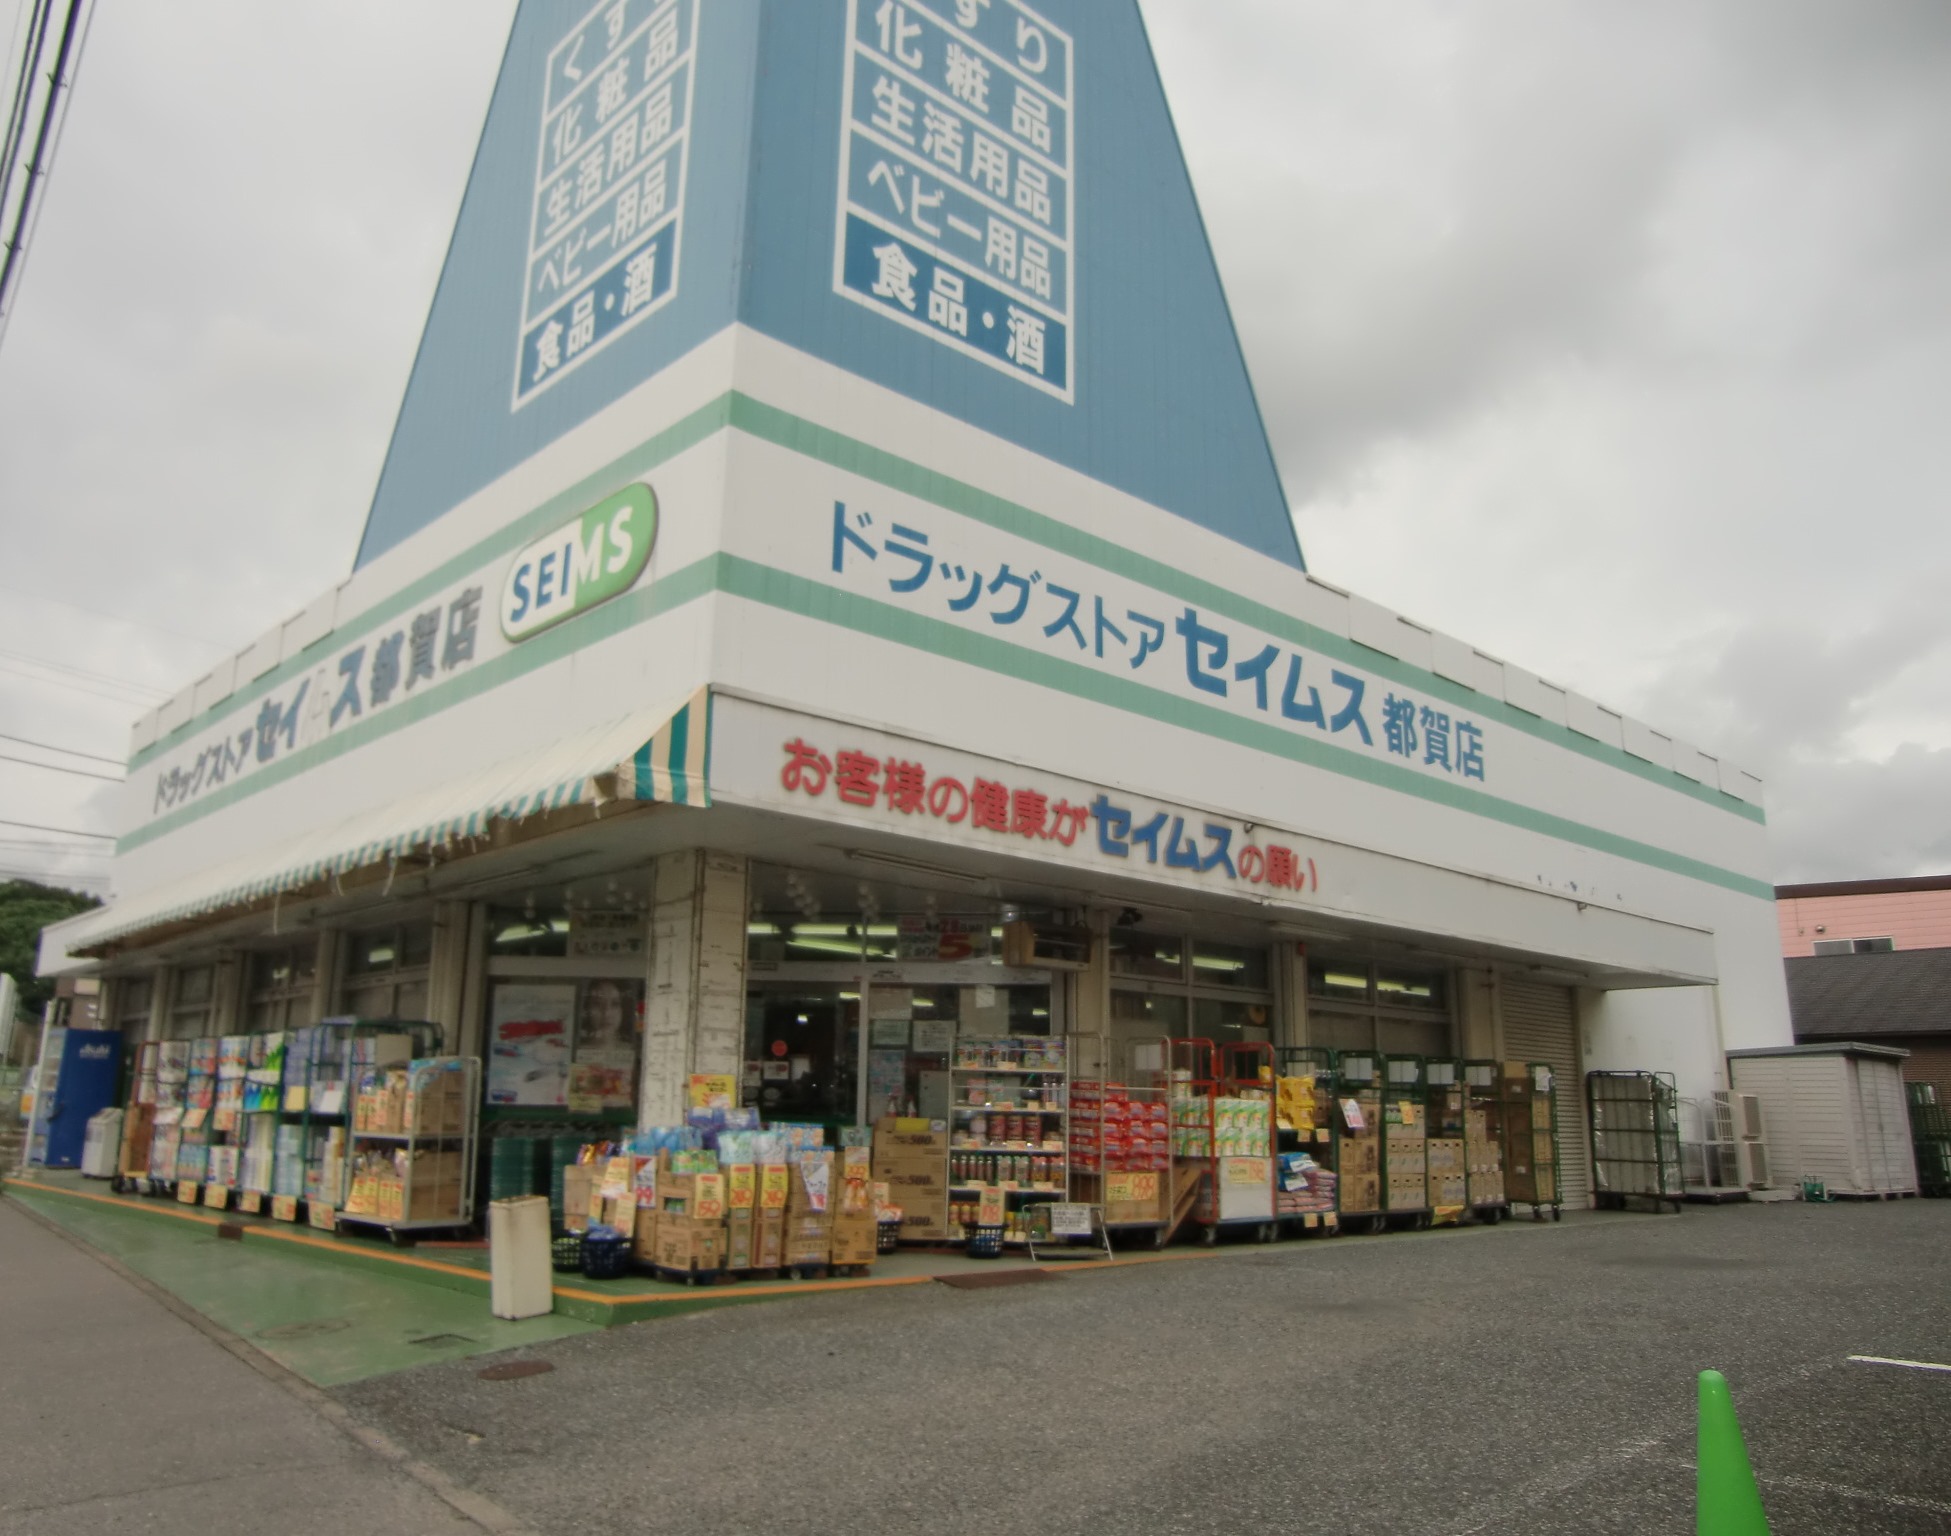 Dorakkusutoa. Drag Seimusu Tsuga shop 595m until (drugstore)